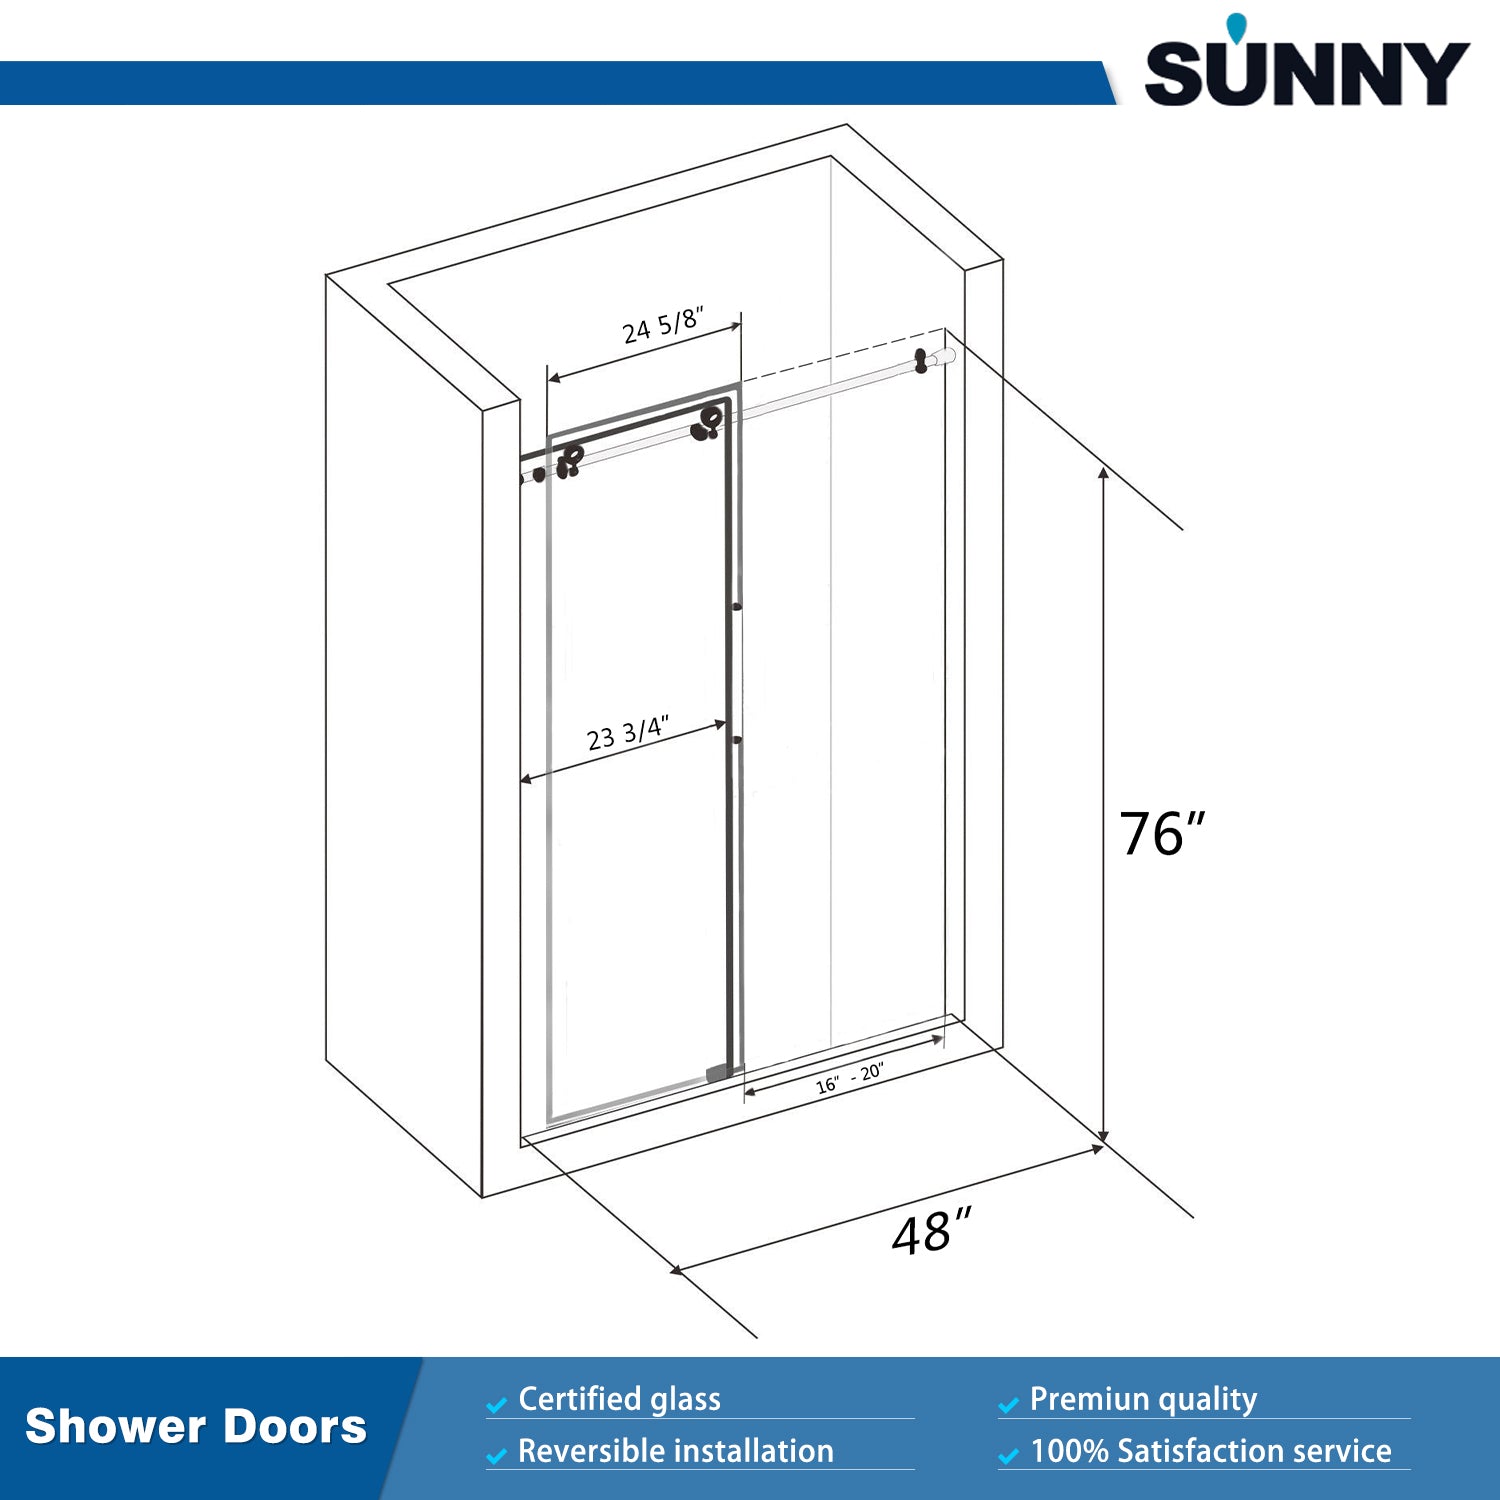 SUNNY SHOWER Frameless Sliding Shower Doors 48 in. W x 76 in. H Size Chart